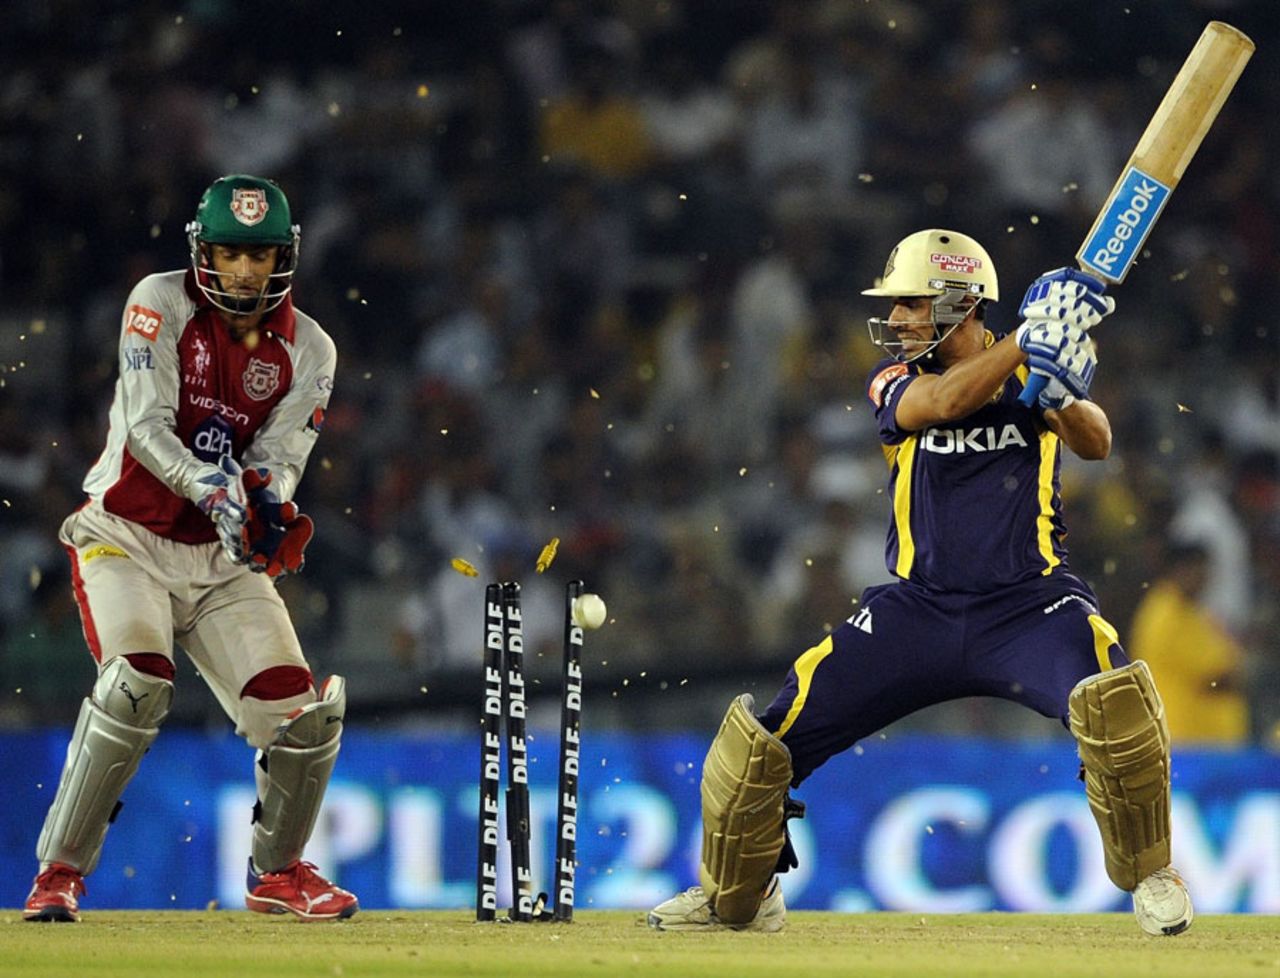 Manvinder Bisla drags the ball onto his stumps, Kings XI Punjab v Kolkata Knight Riders, IPL, Mohali, April 18, 2012 